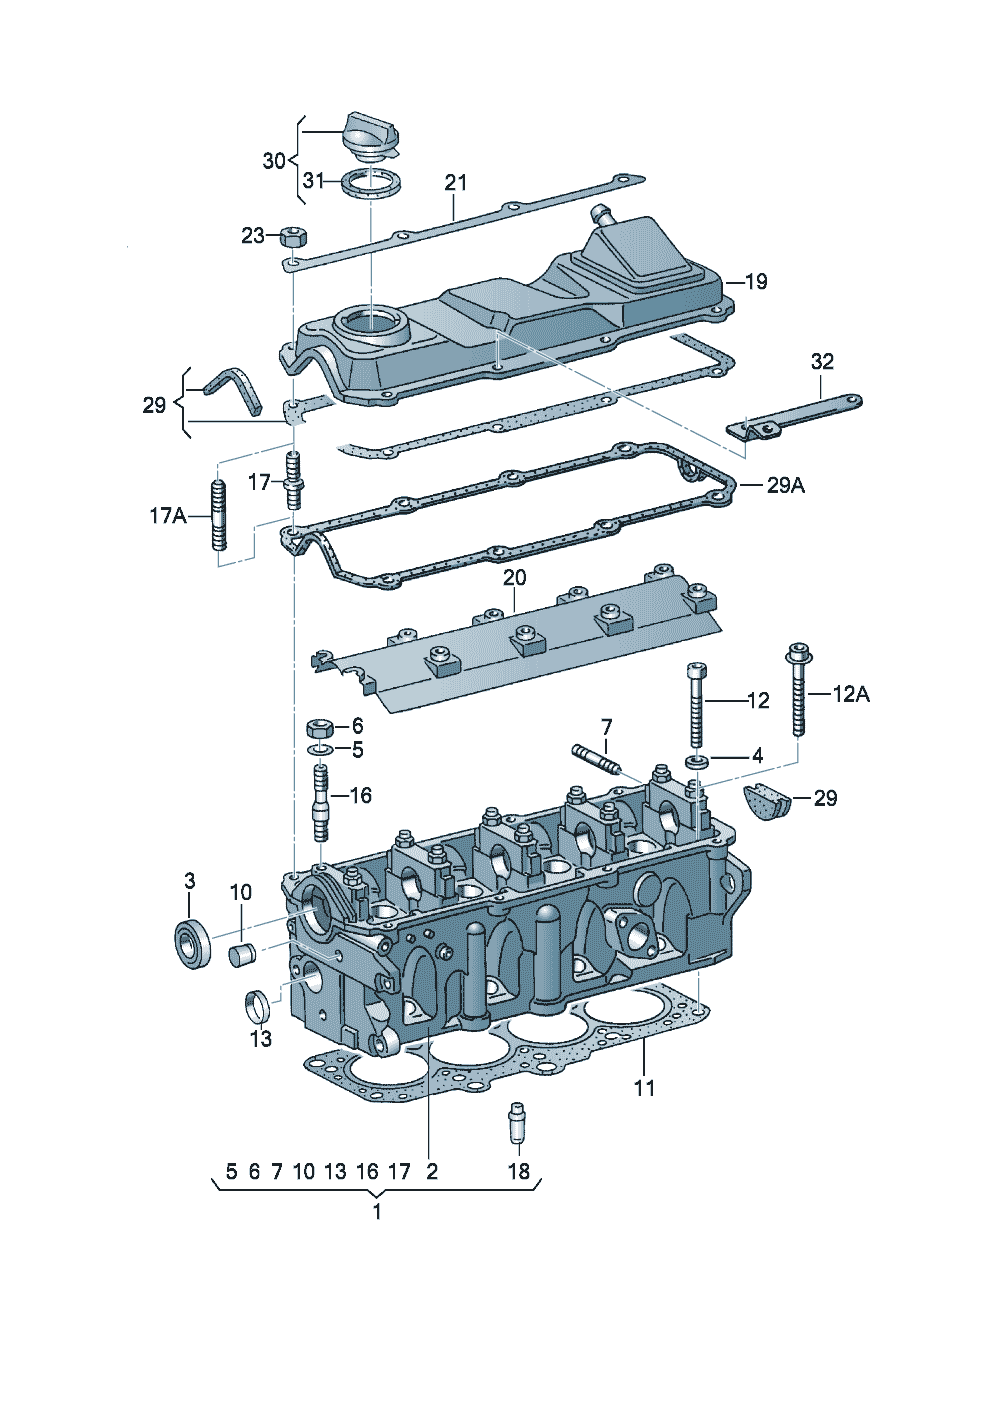 Cilinderkopklepdeksel 1,6ltr. - Audi A4/Avant - a4